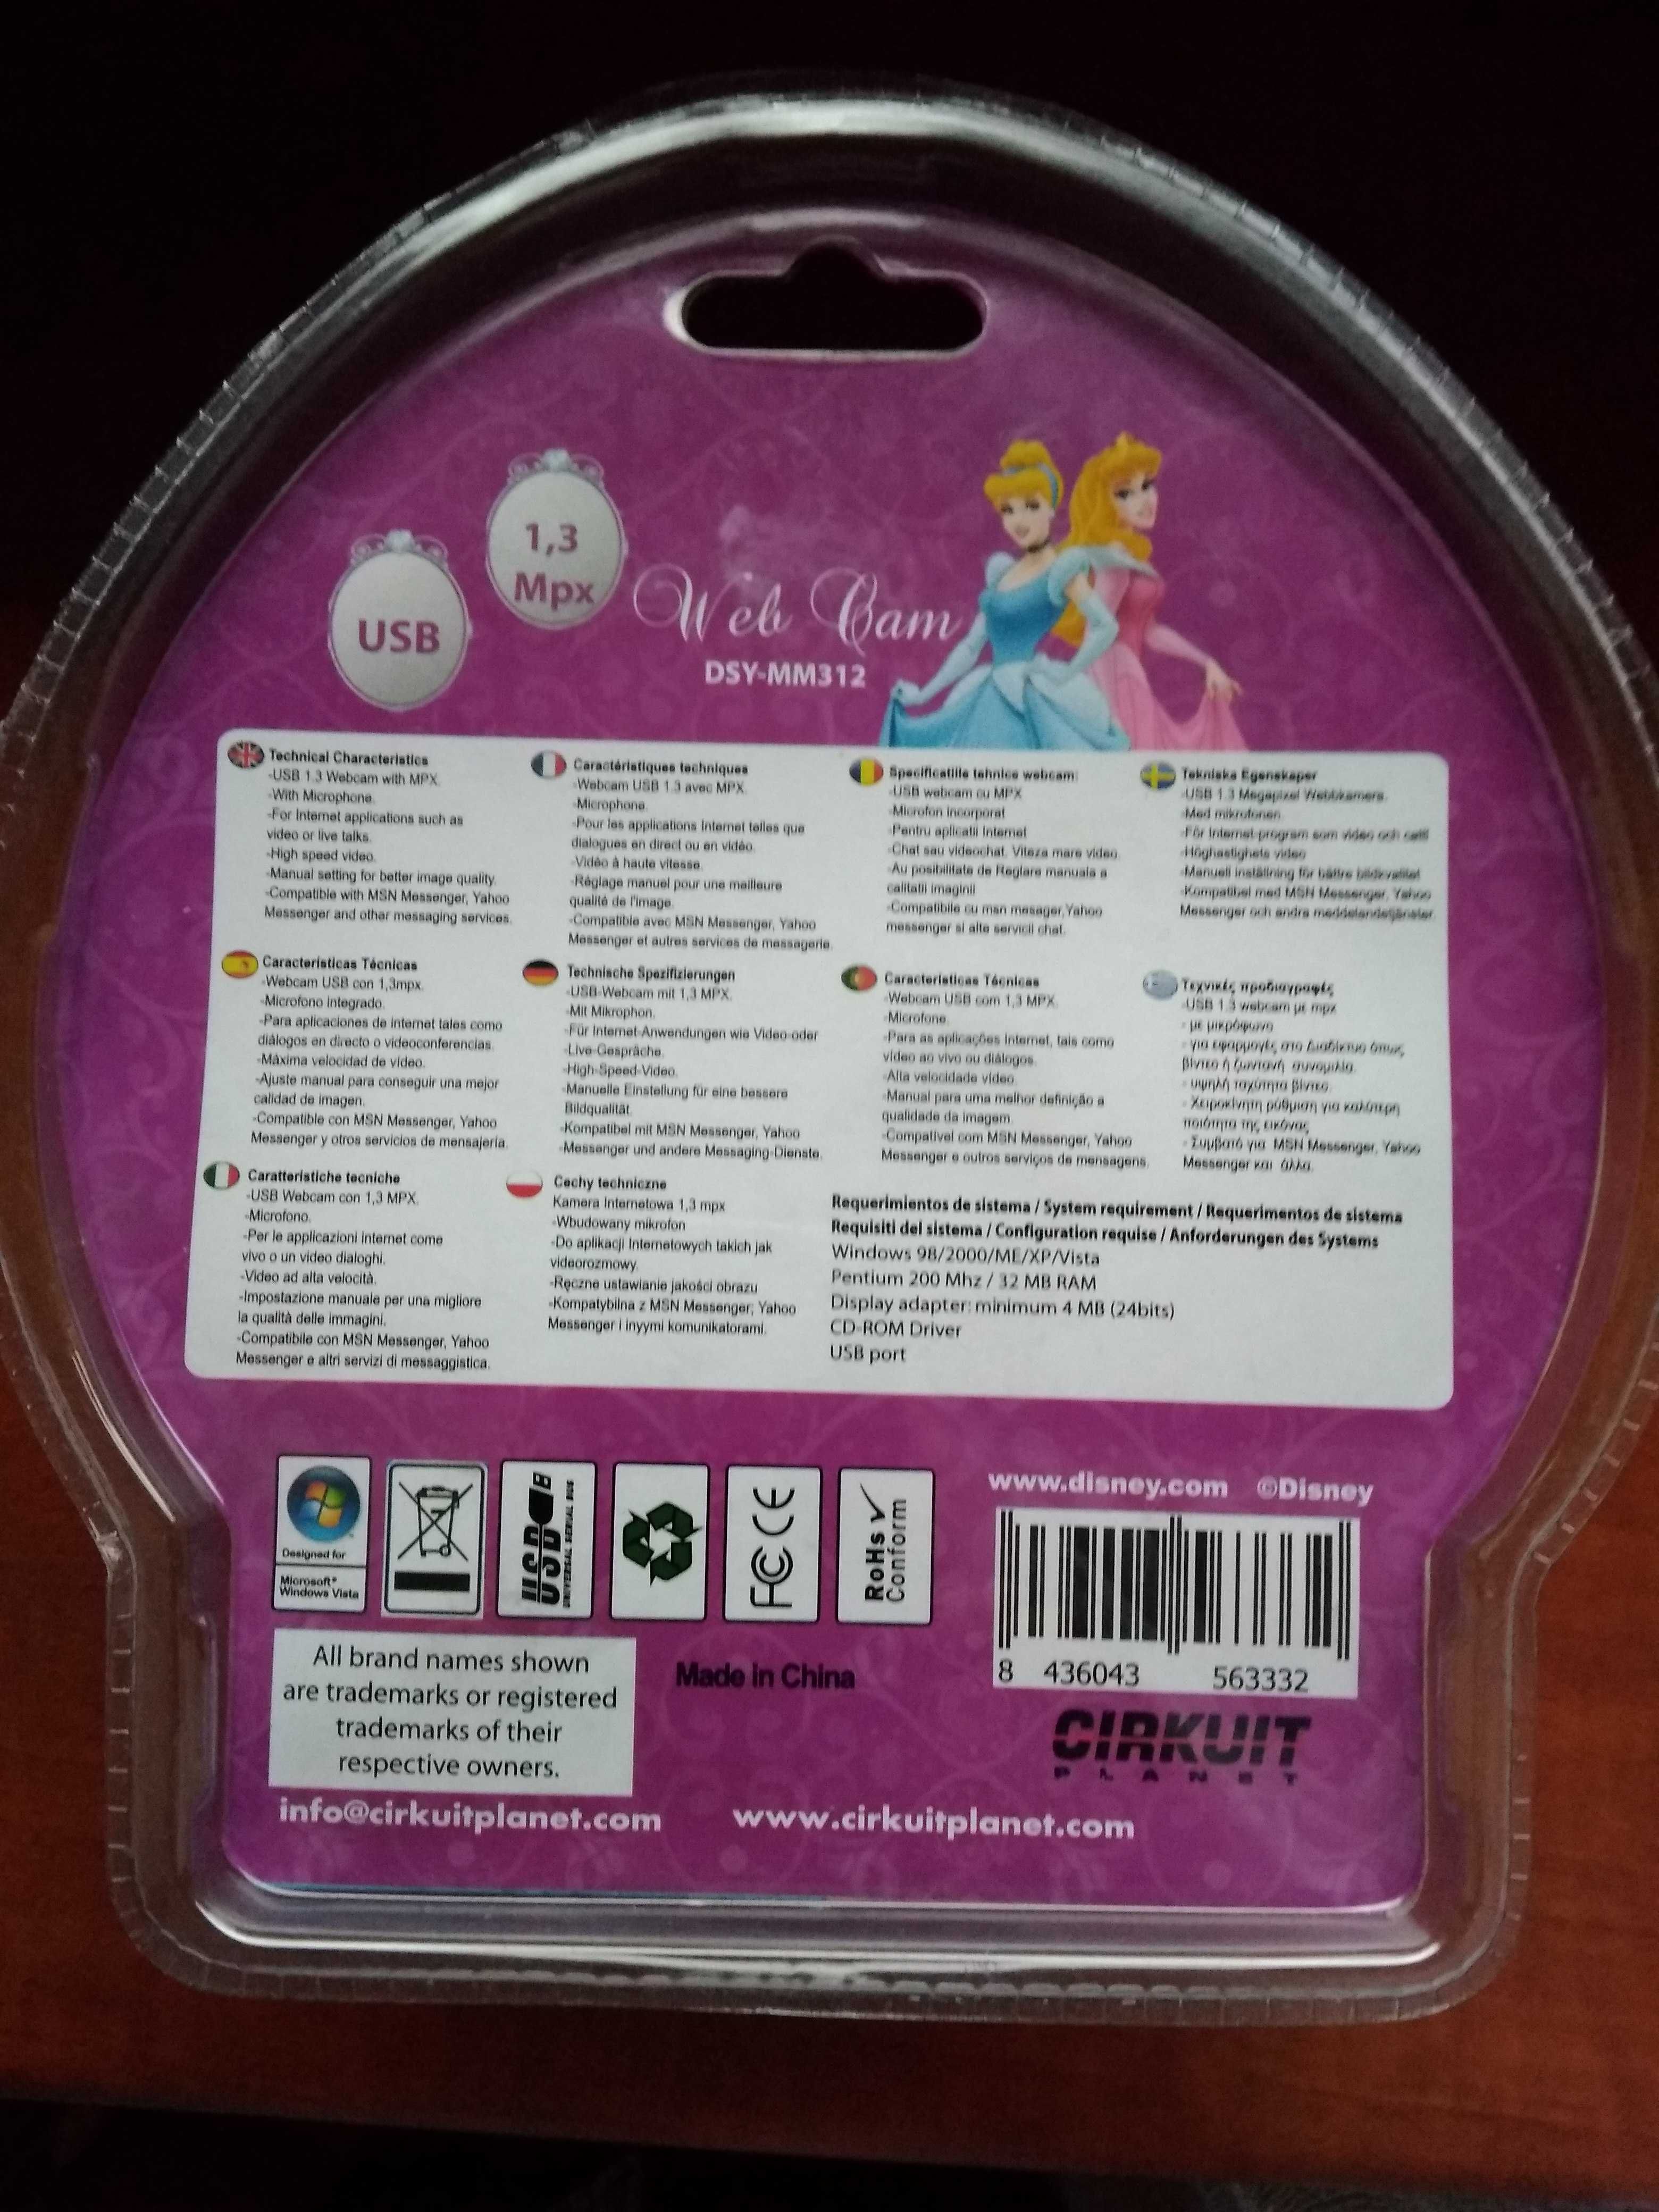 Disney Princess kamerka internetowa USB 1.3 MPX, mikrofon, port USB